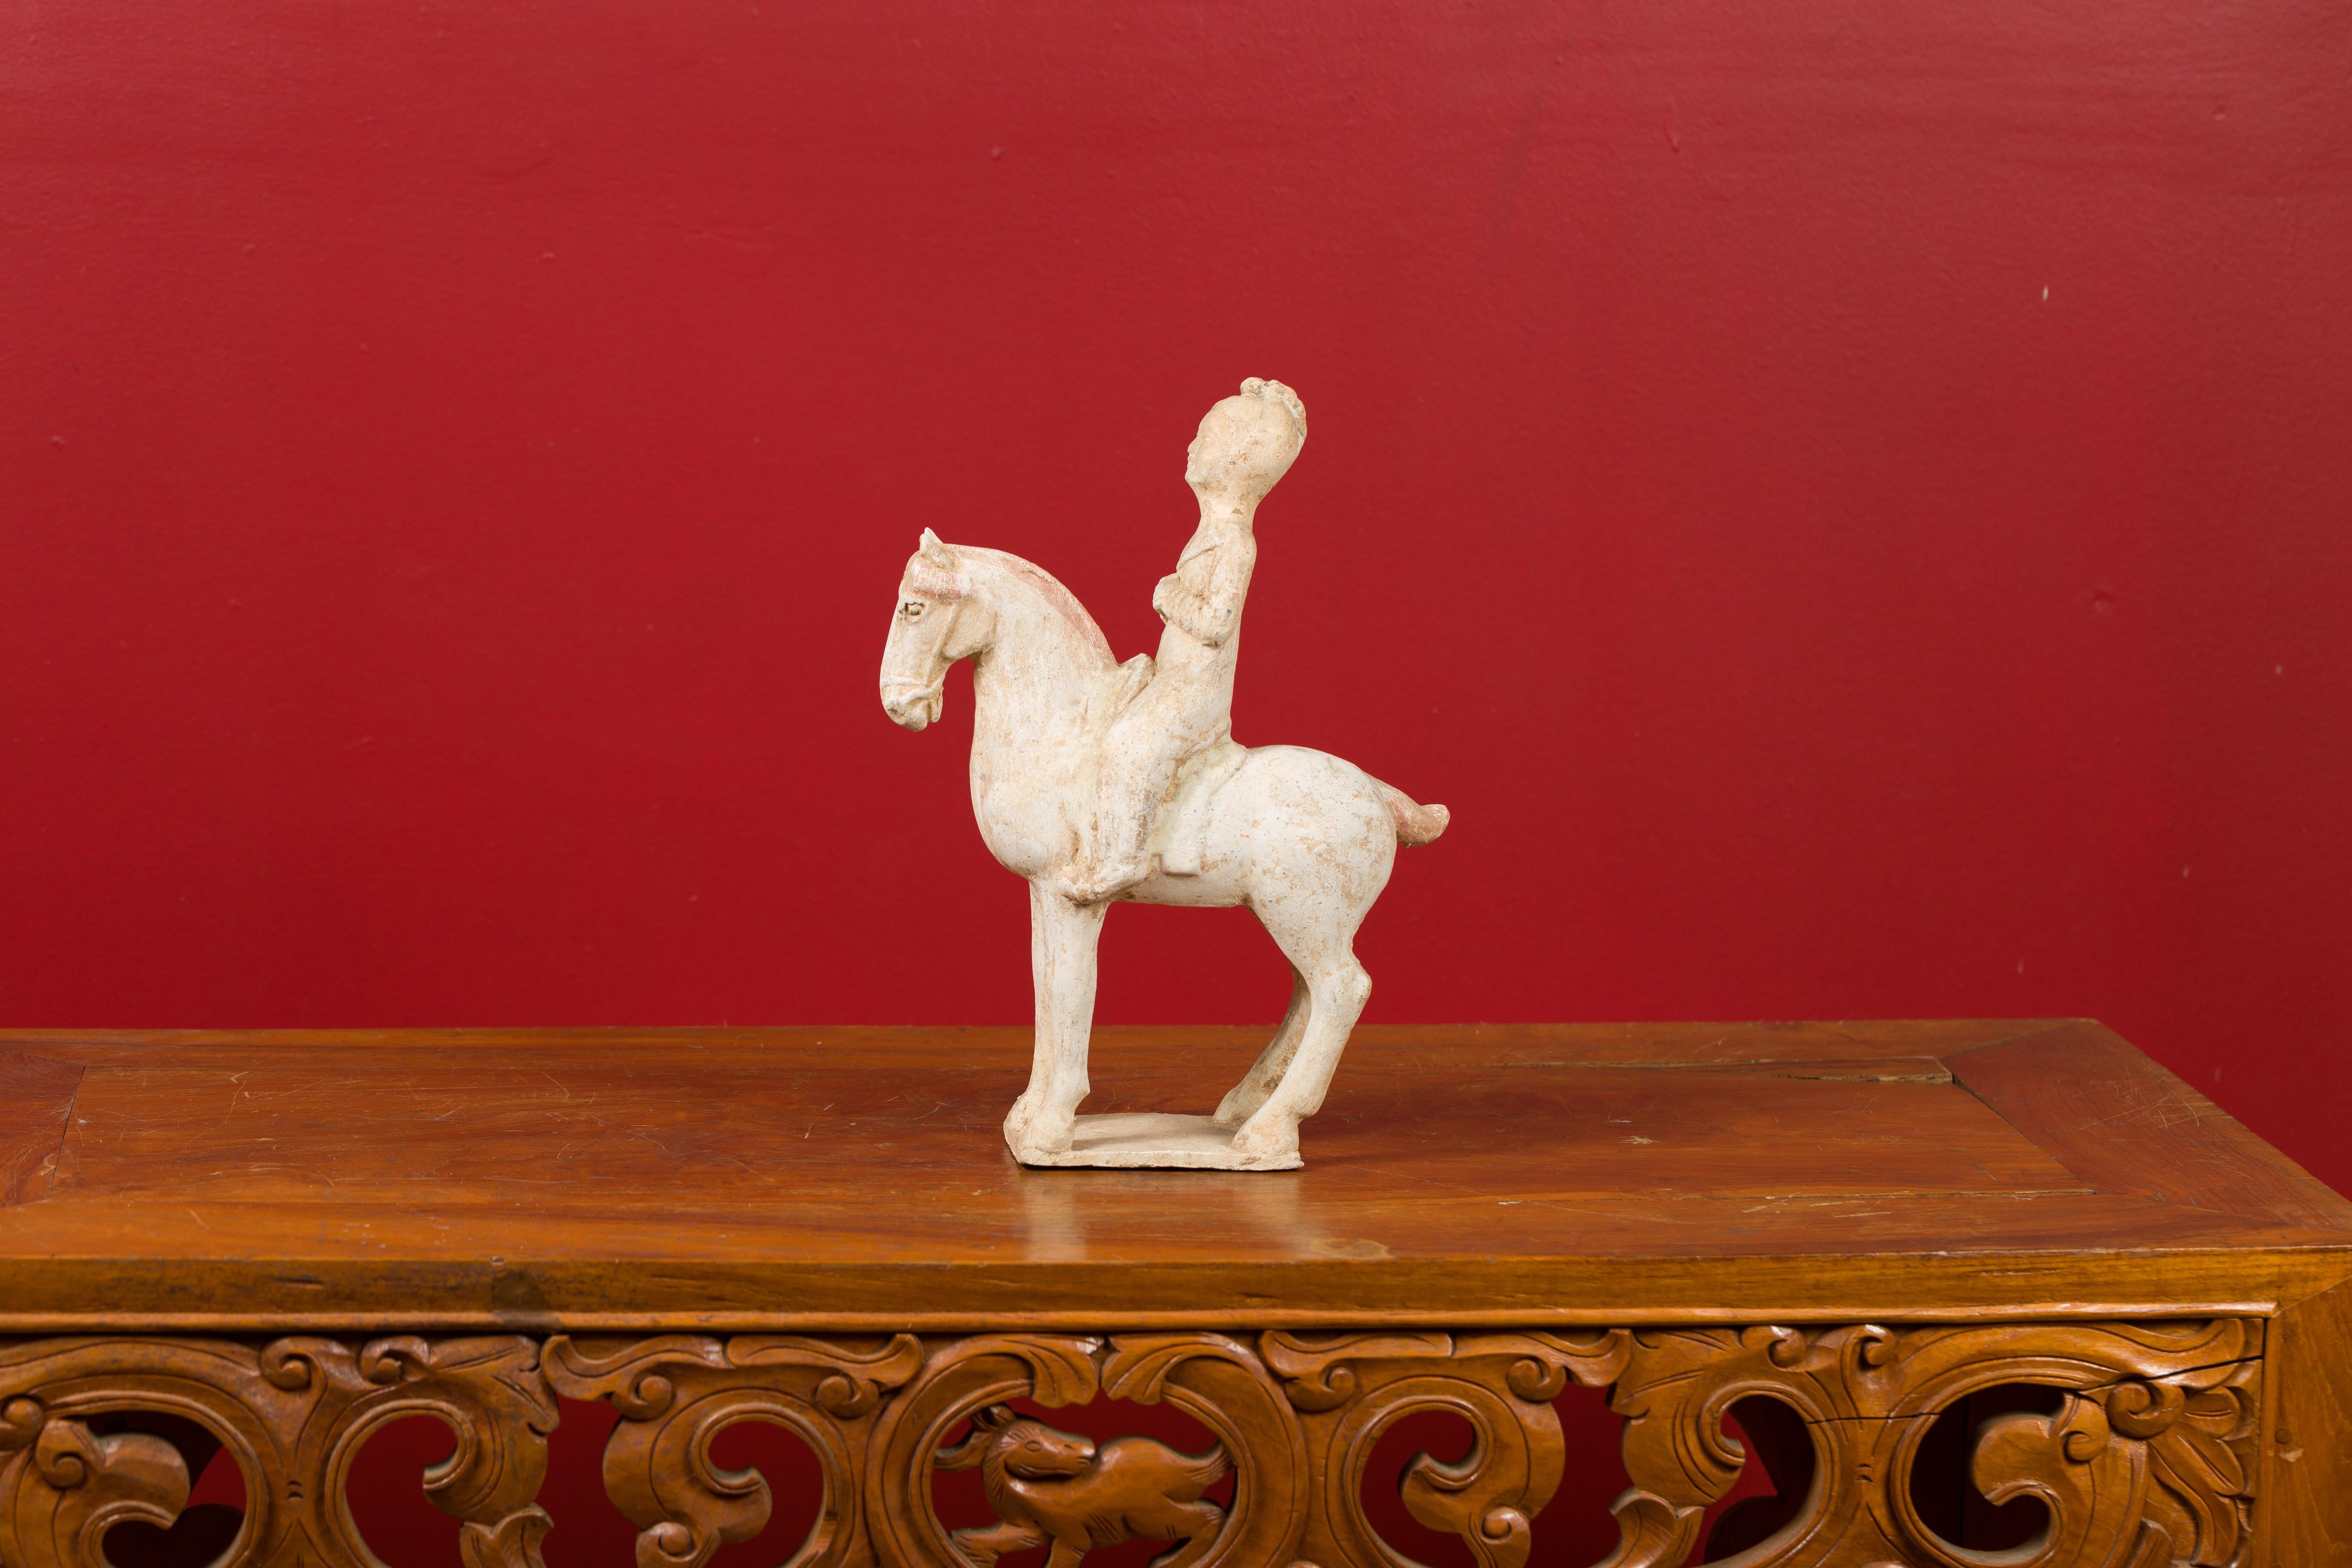 Statuette en terre cuite peinte d'un cheval et d'un cavalier, datant de la période de la dynastie Han, vers 202 av. Créée en Chine durant la prestigieuse dynastie Han, cette statuette, représentant un cheval et son cavalier, présente des vestiges de